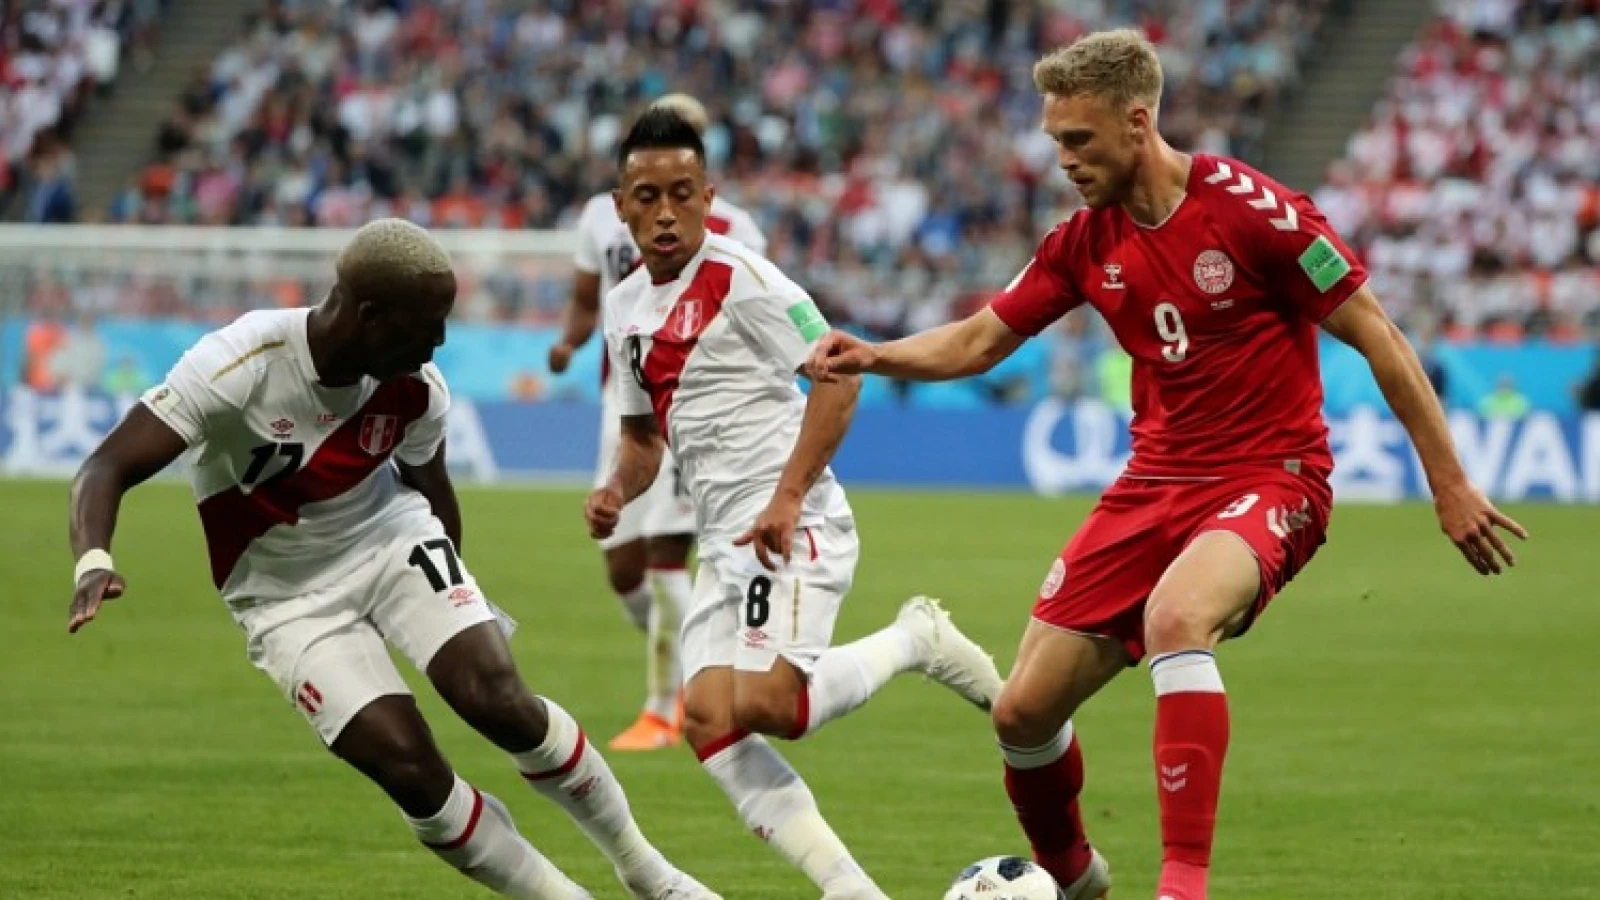 KANTINE | Dag 8 WK 2018 | Argentinië krijgt het lastig door verlies tegen Kroatië